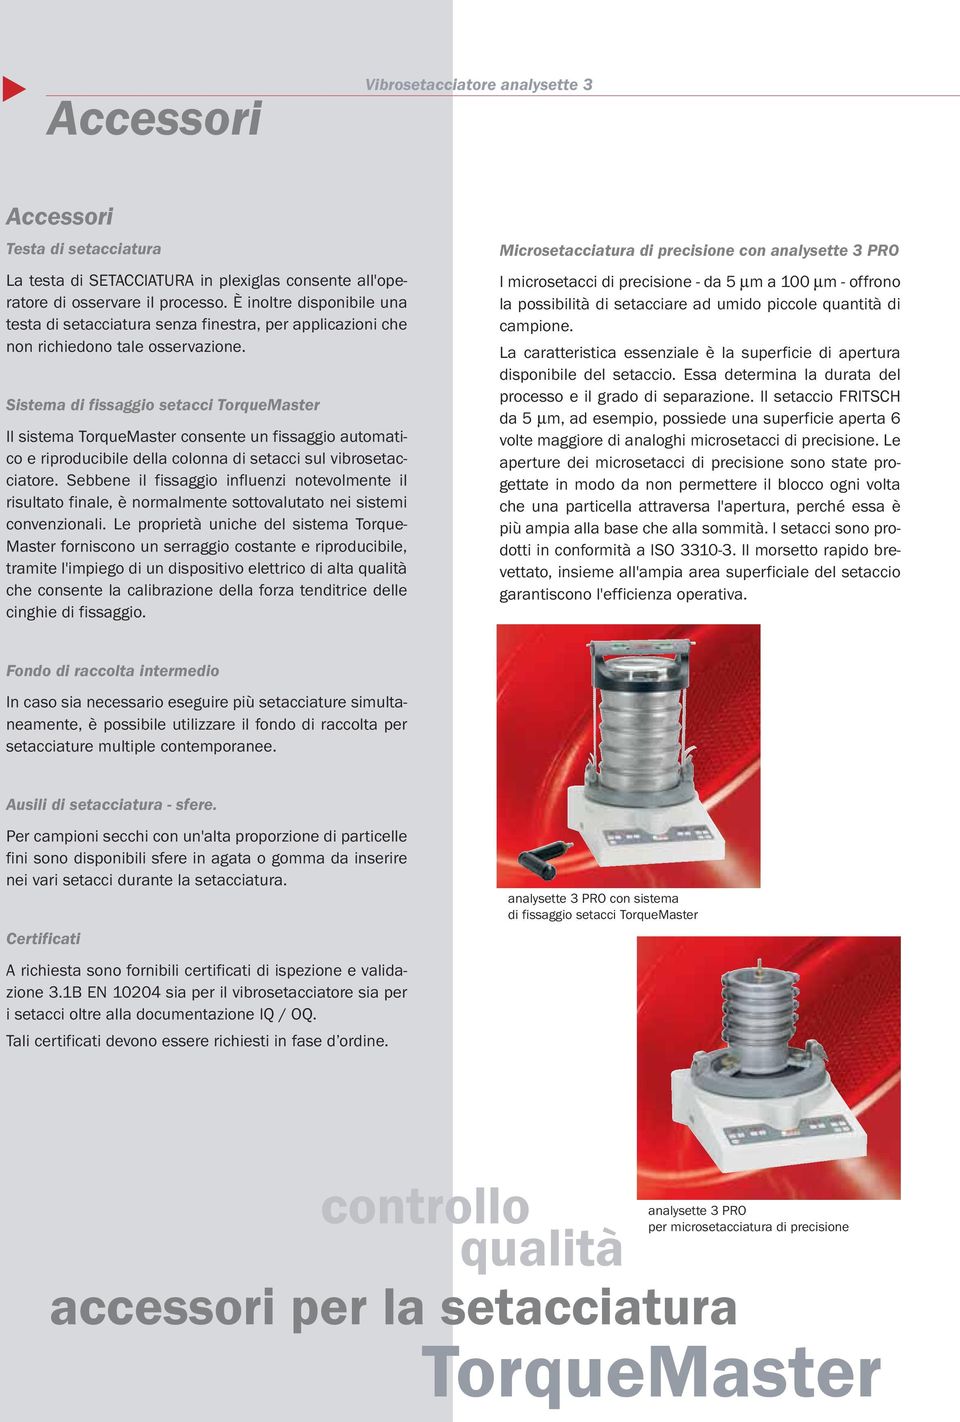 Sistema di fissaggio setacci TorqueMaster Il sistema TorqueMaster consente un fissaggio automatico e riproducibile della colonna di setacci sul vibrosetacciatore.